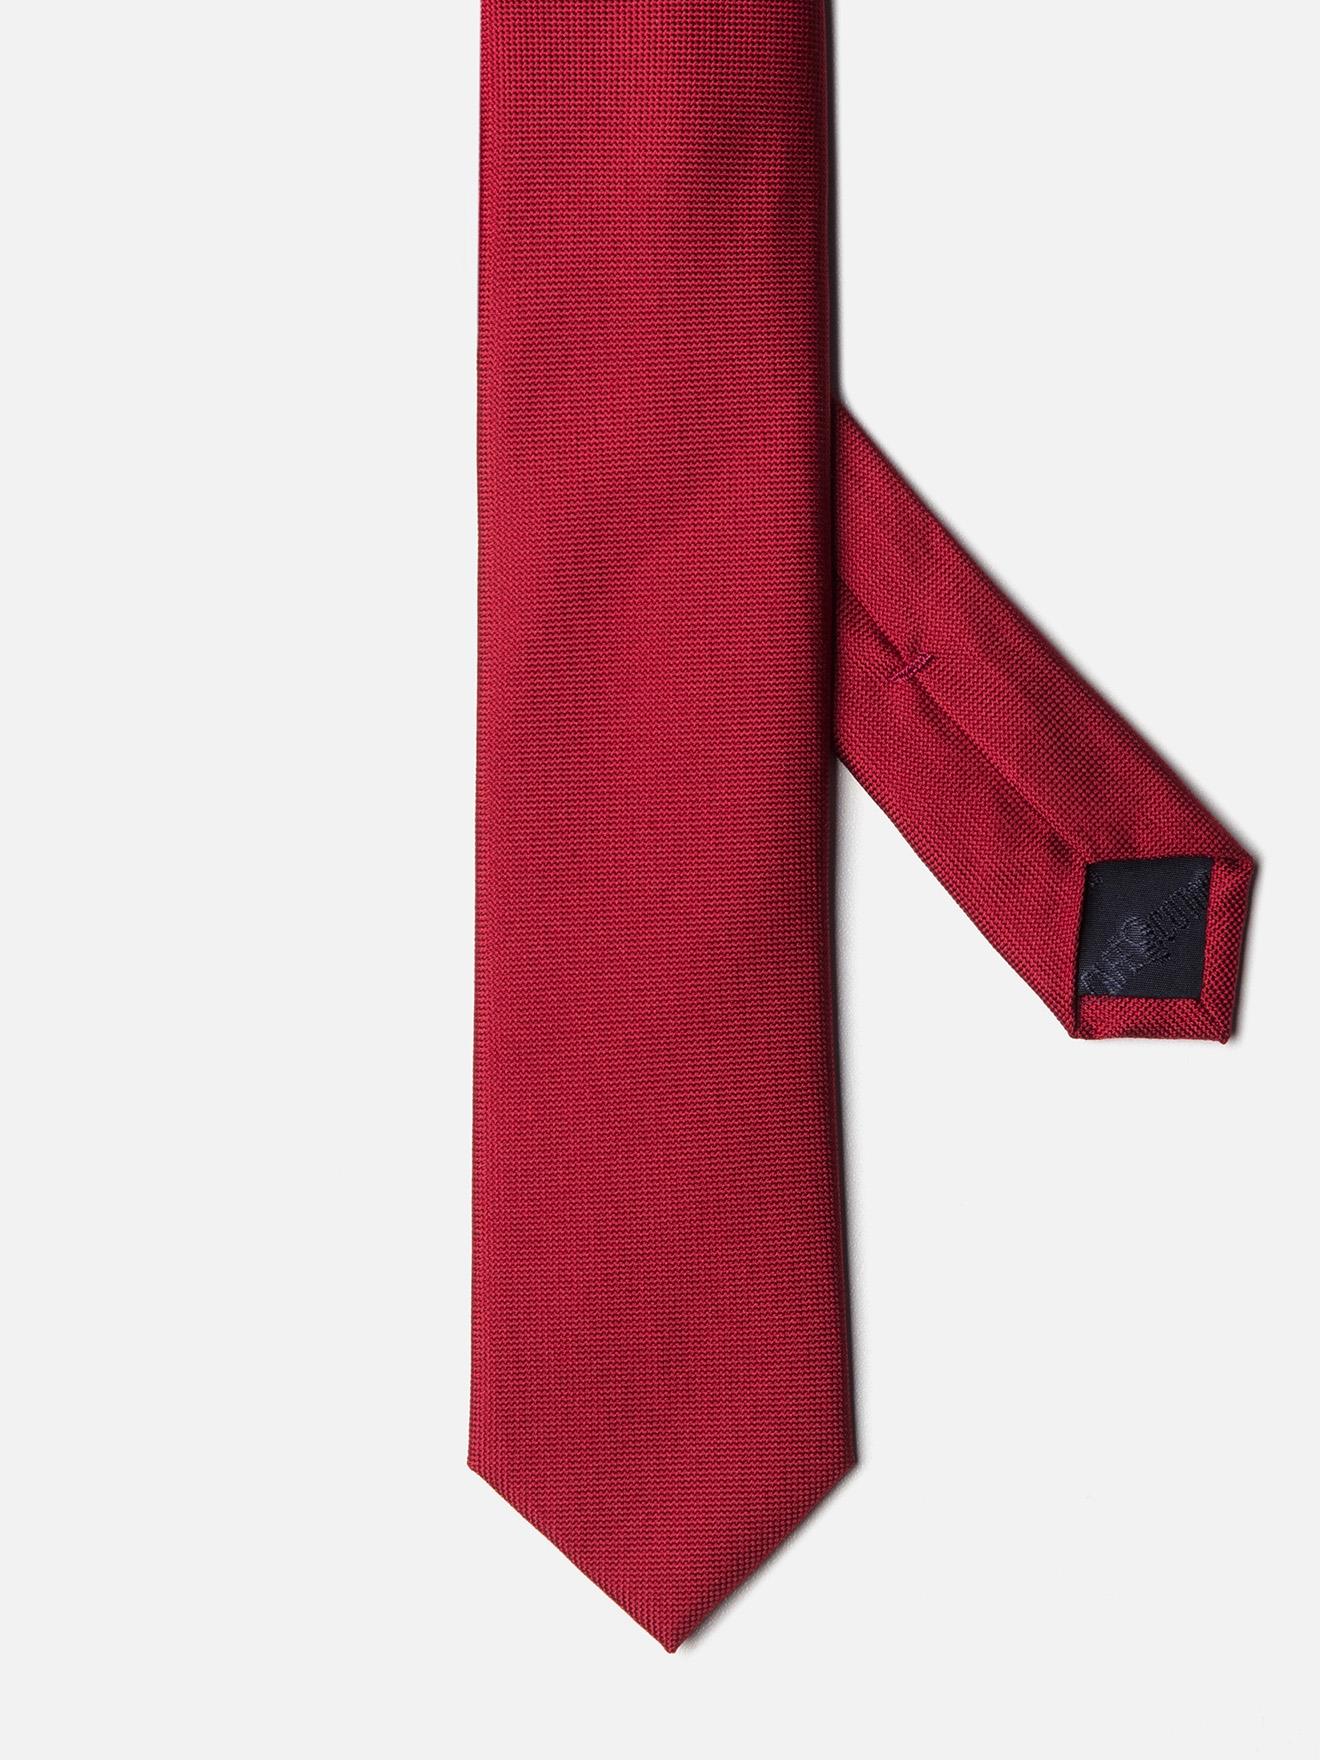 Cravate fine en soie rouge